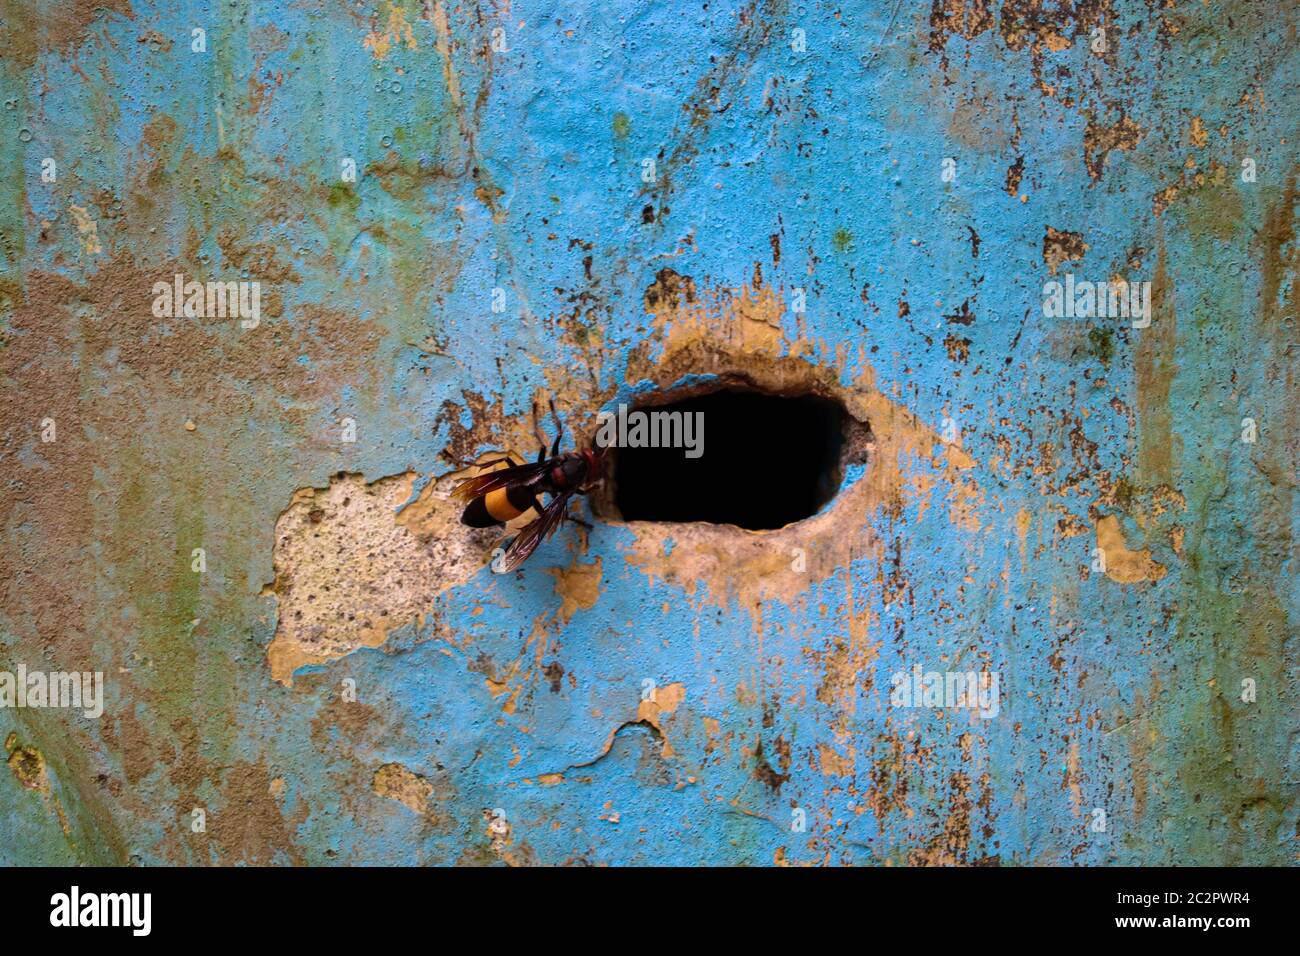 Paysage unique abeille entrant dans leur trou de nid. Mise au point sélective. Faible profondeur de champ. Flou d'arrière-plan. Banque D'Images